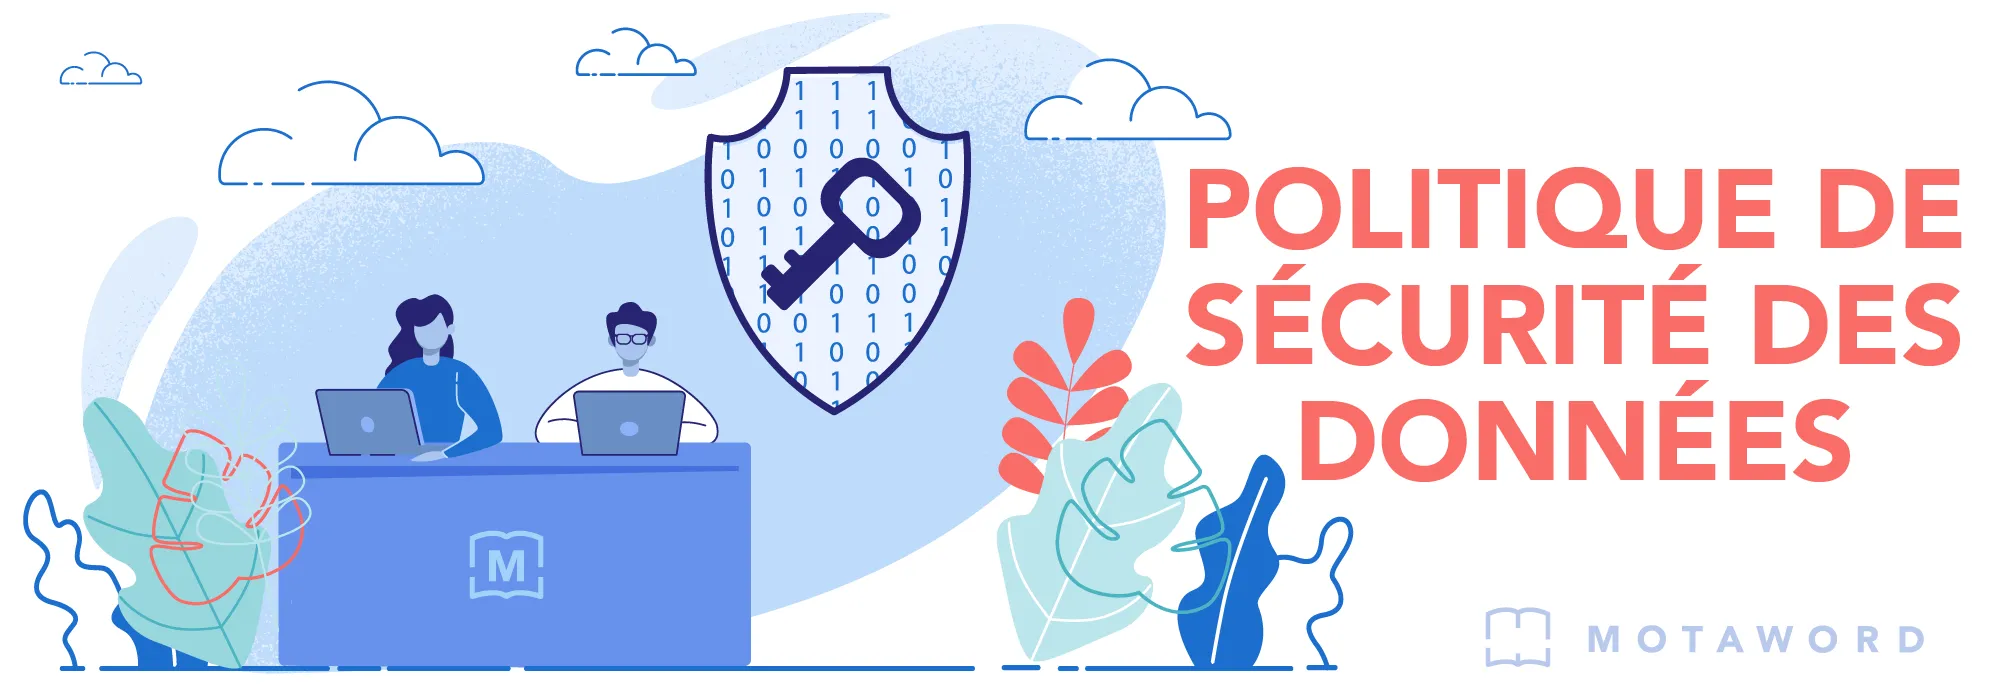 Politique de sécurité des données